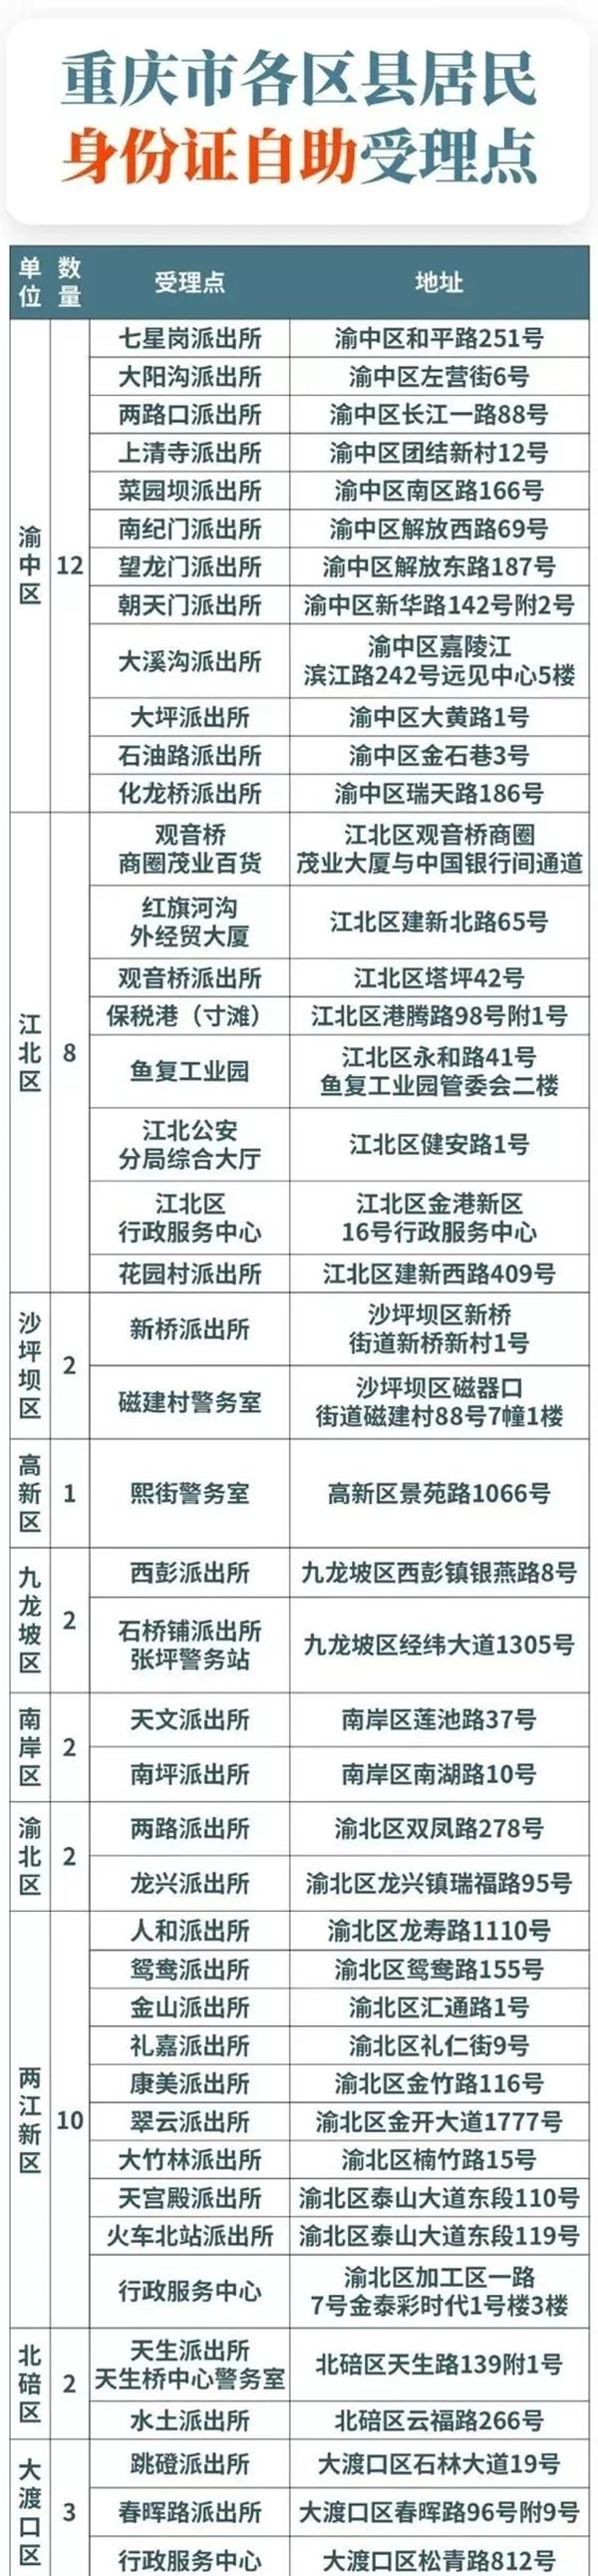 重庆自助办理身份证在哪里办理-操作流程